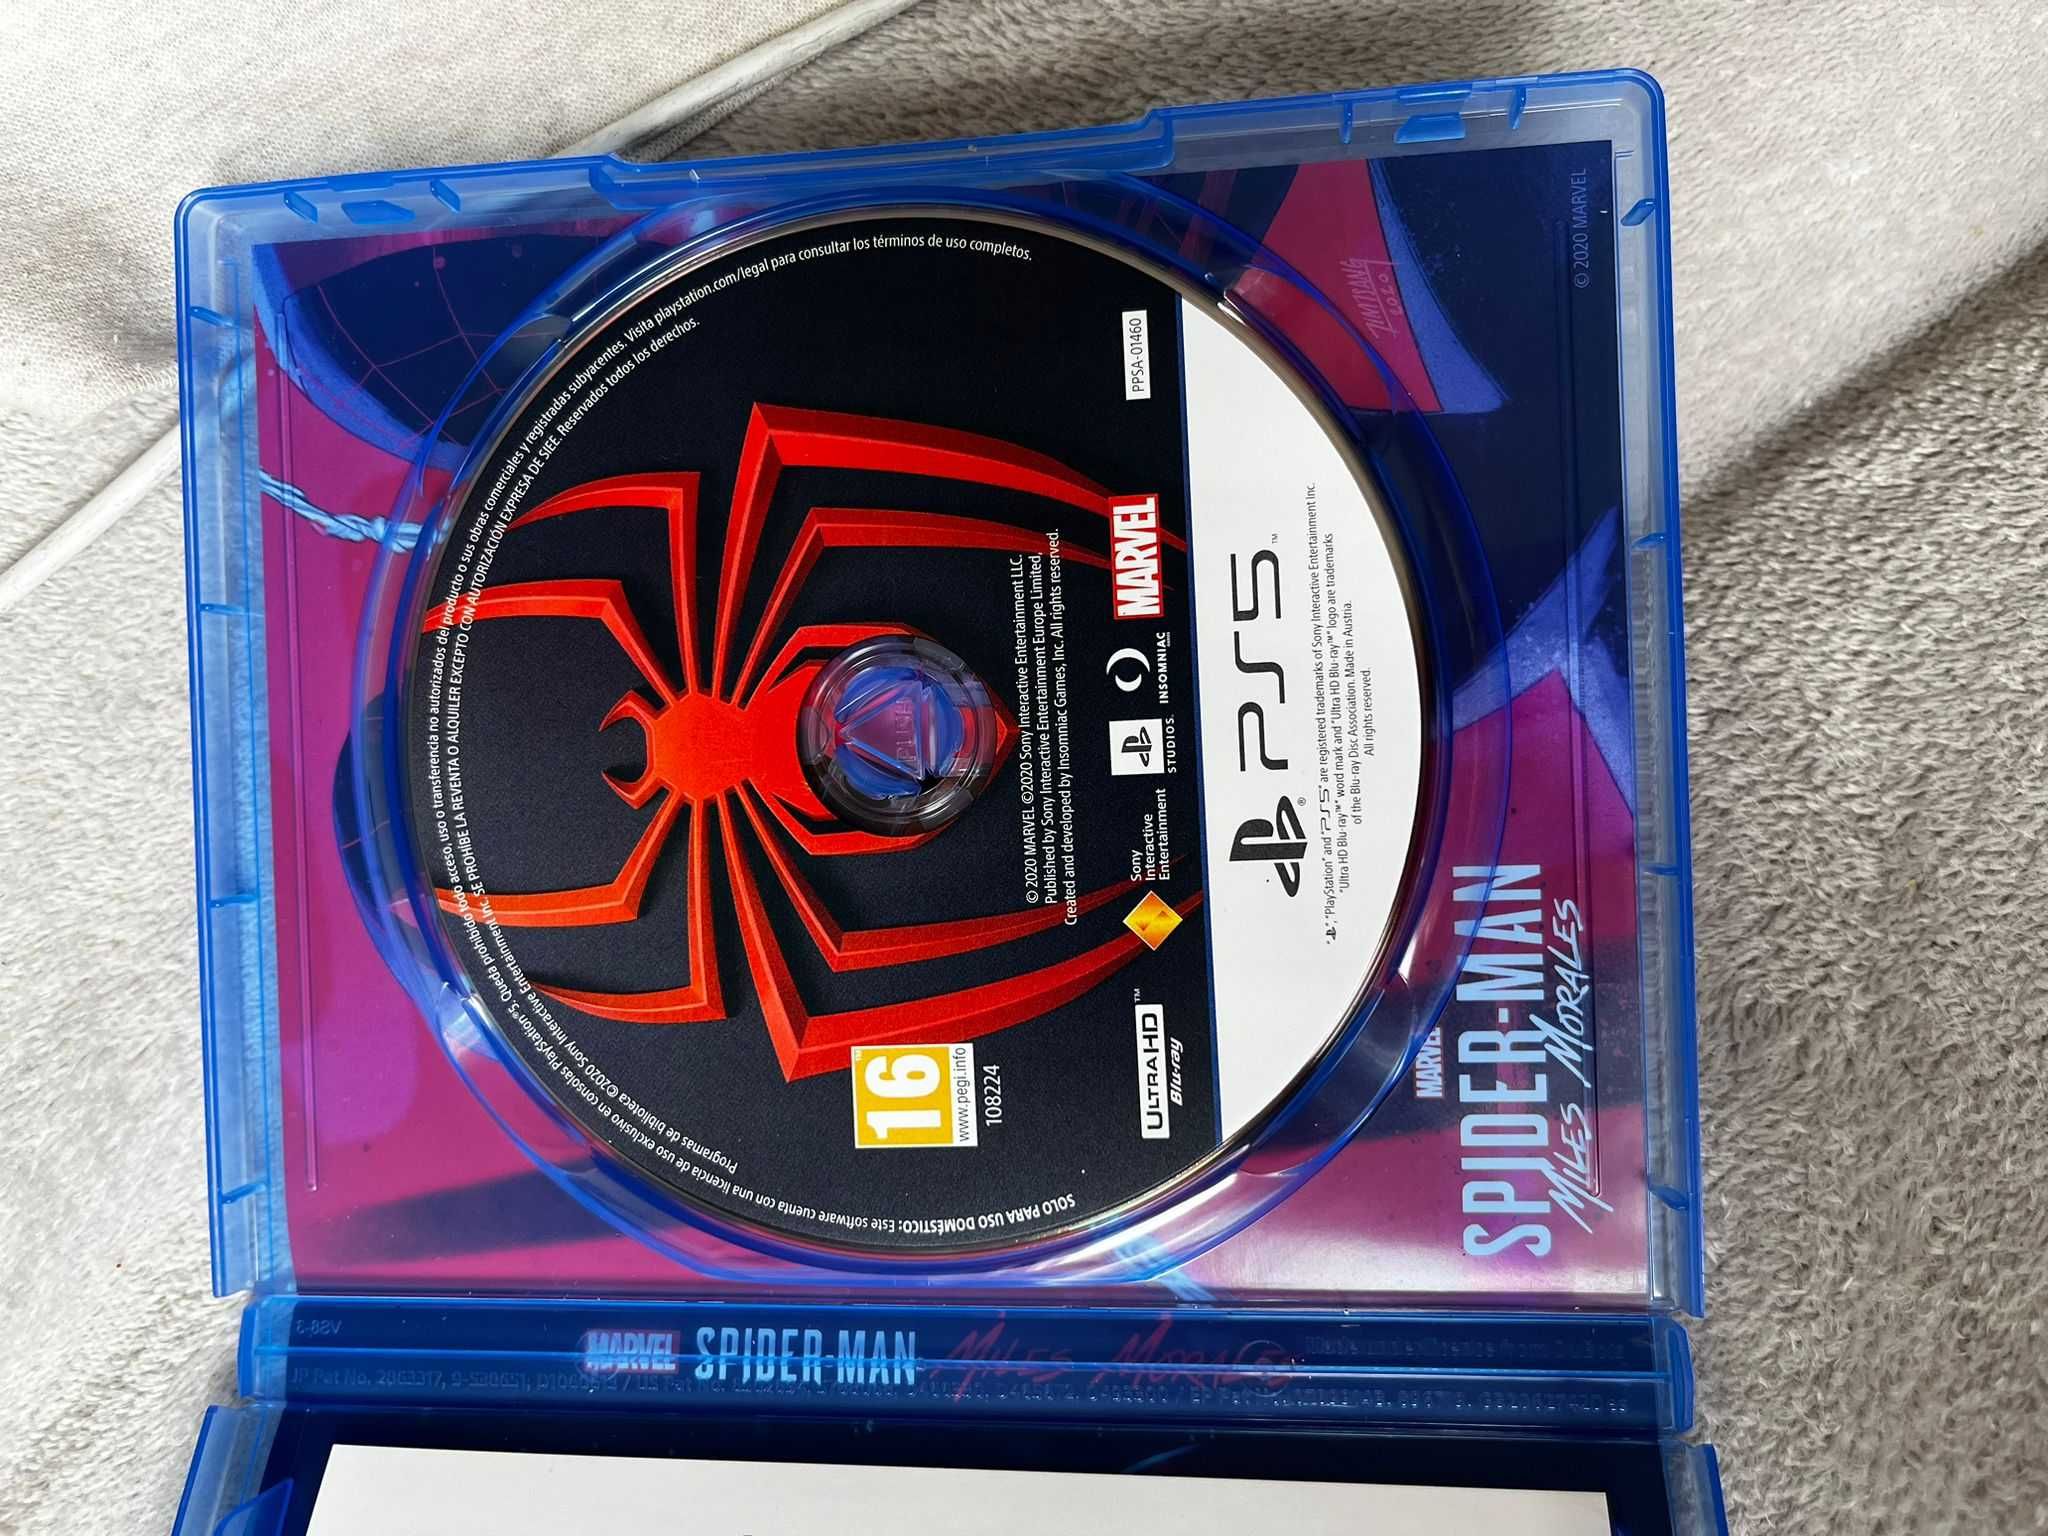 Jogo PS5 : Spiderman Miles Morales (novo)